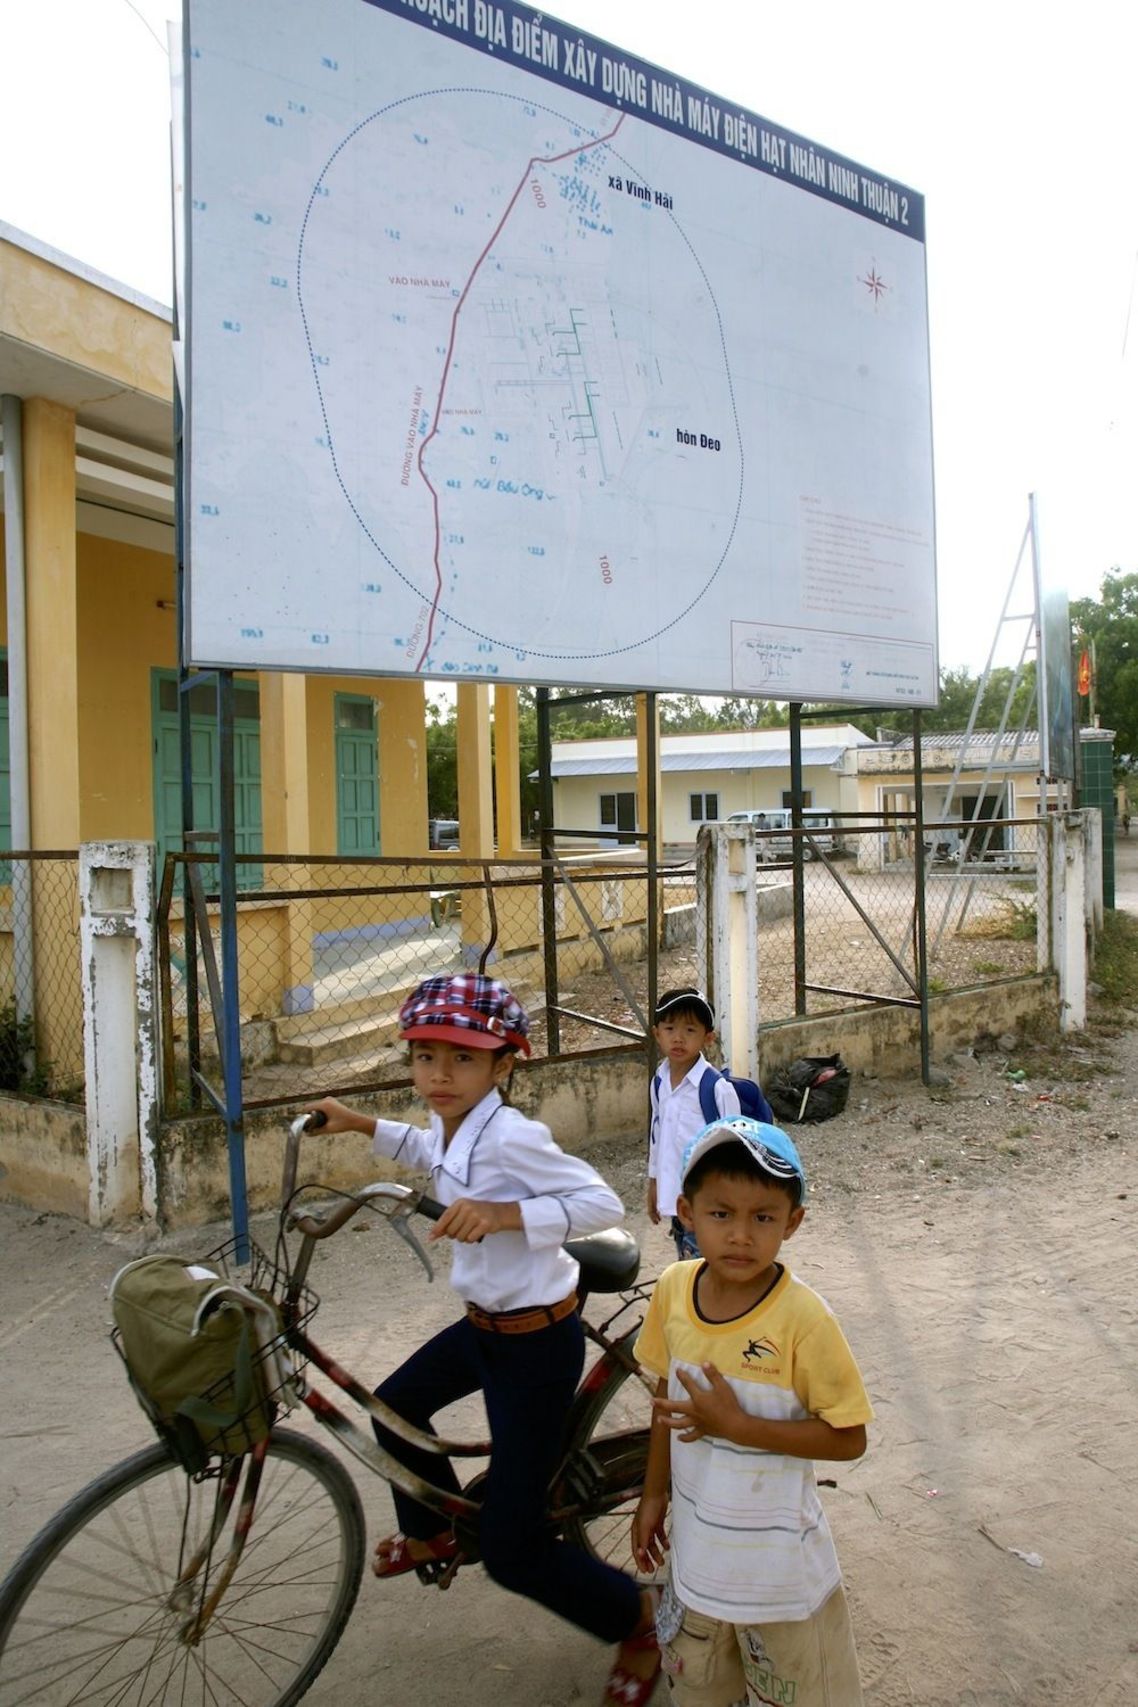 タイアン村の地図の上に、原発の建設場所が書かれていた